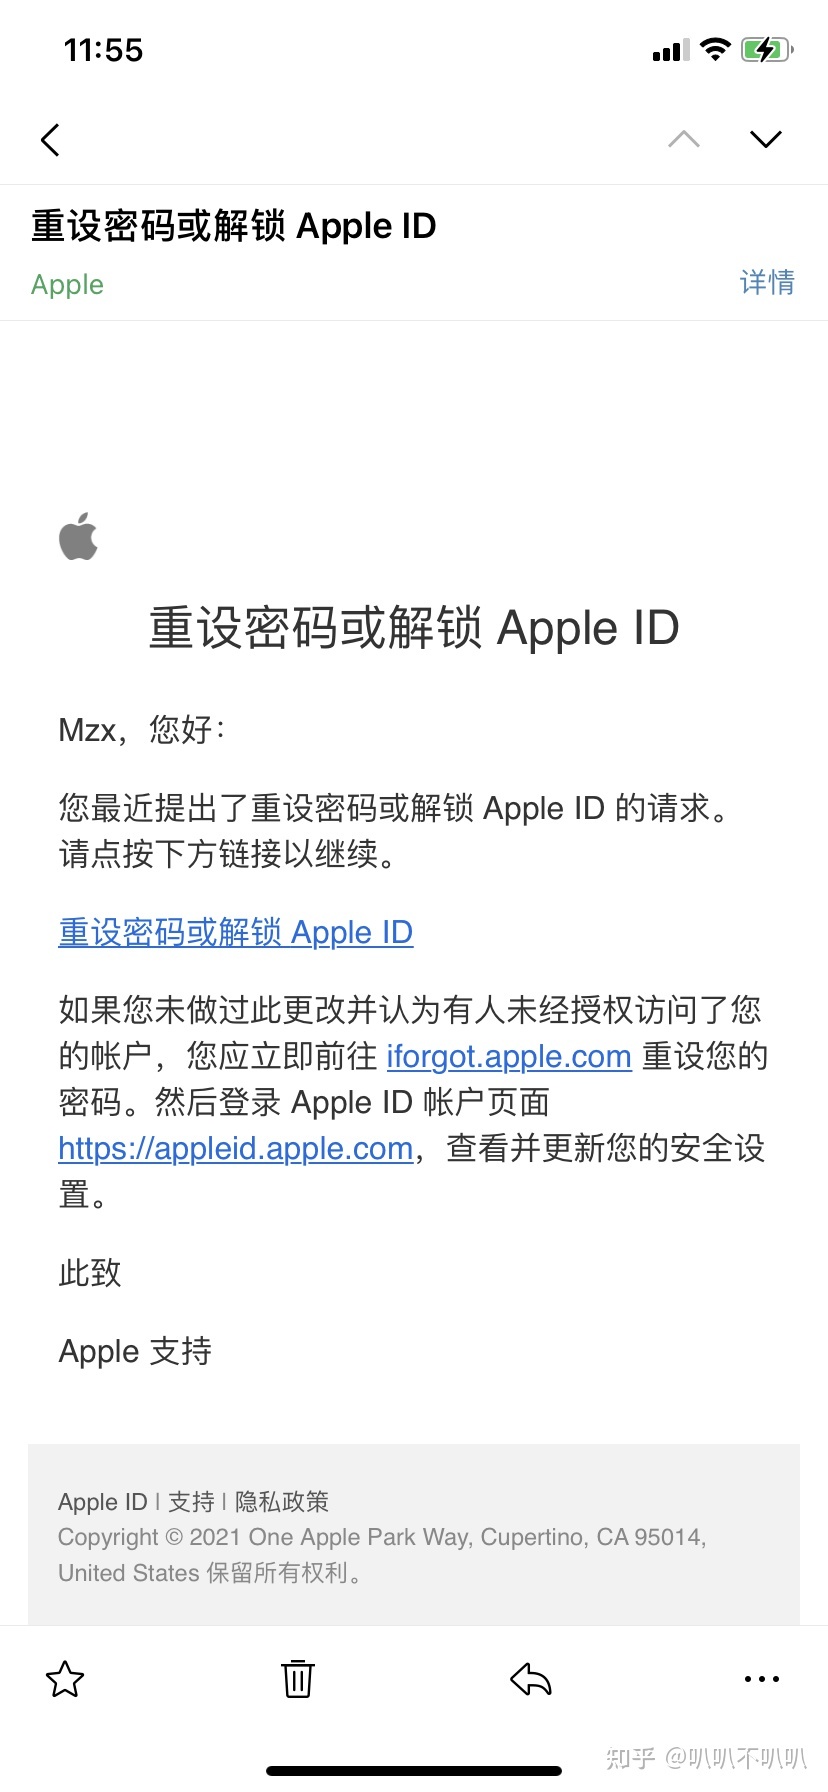 苹果手机登录外国ID会被锁_什么情况下苹果id会锁_苹果id被盗手机被锁